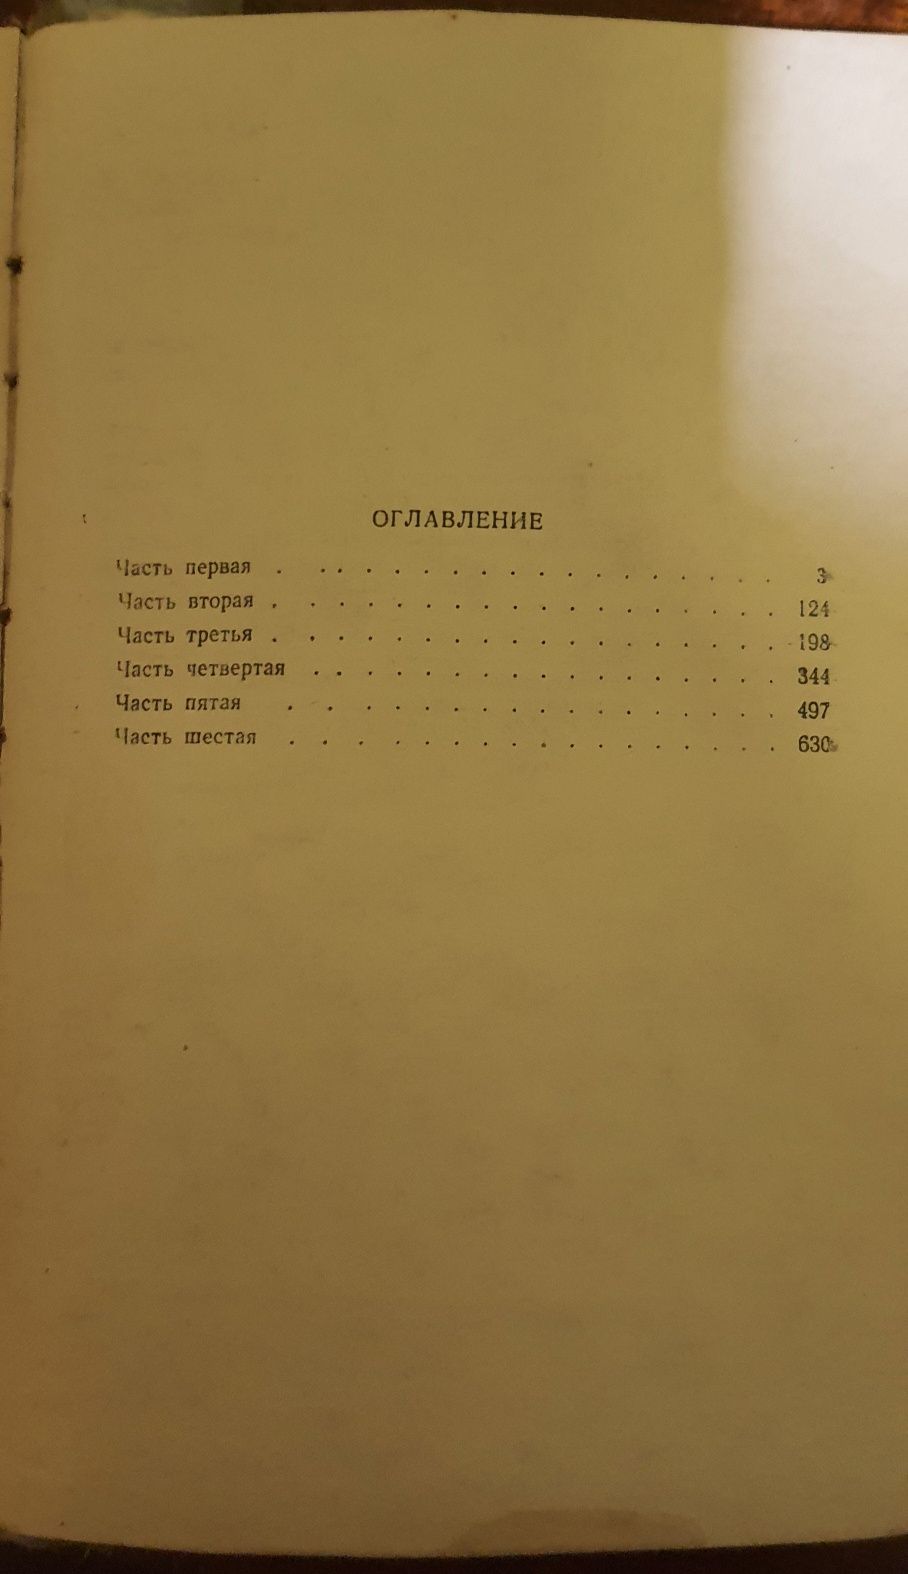 Буря, Илья Эренбург, книга 1948 года издания